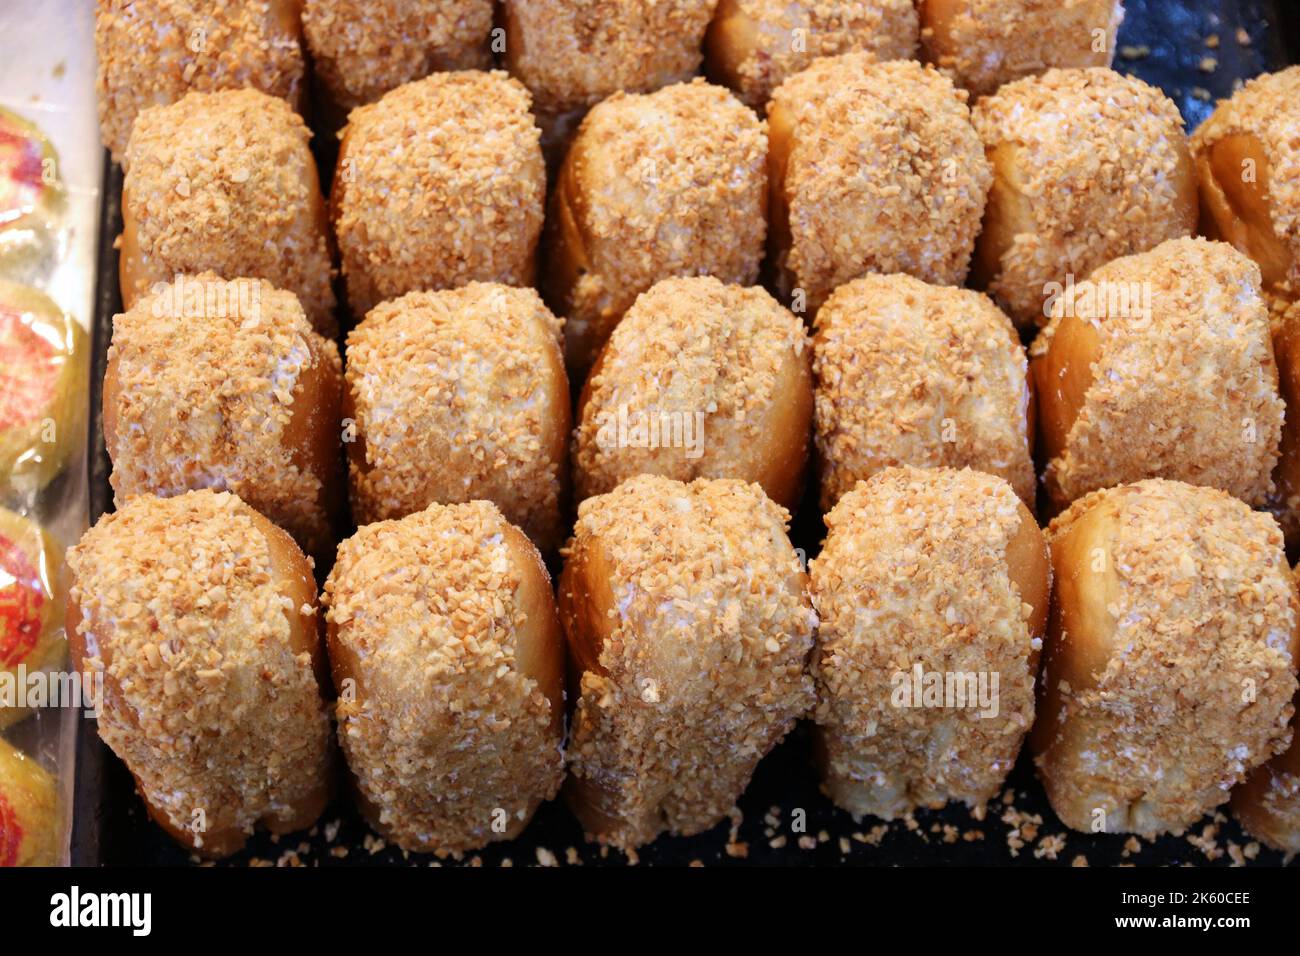 Taiwanesisches Essen. Erdnussmilchbrot, typisch taiwanesisches Süßgebäck. Stockfoto